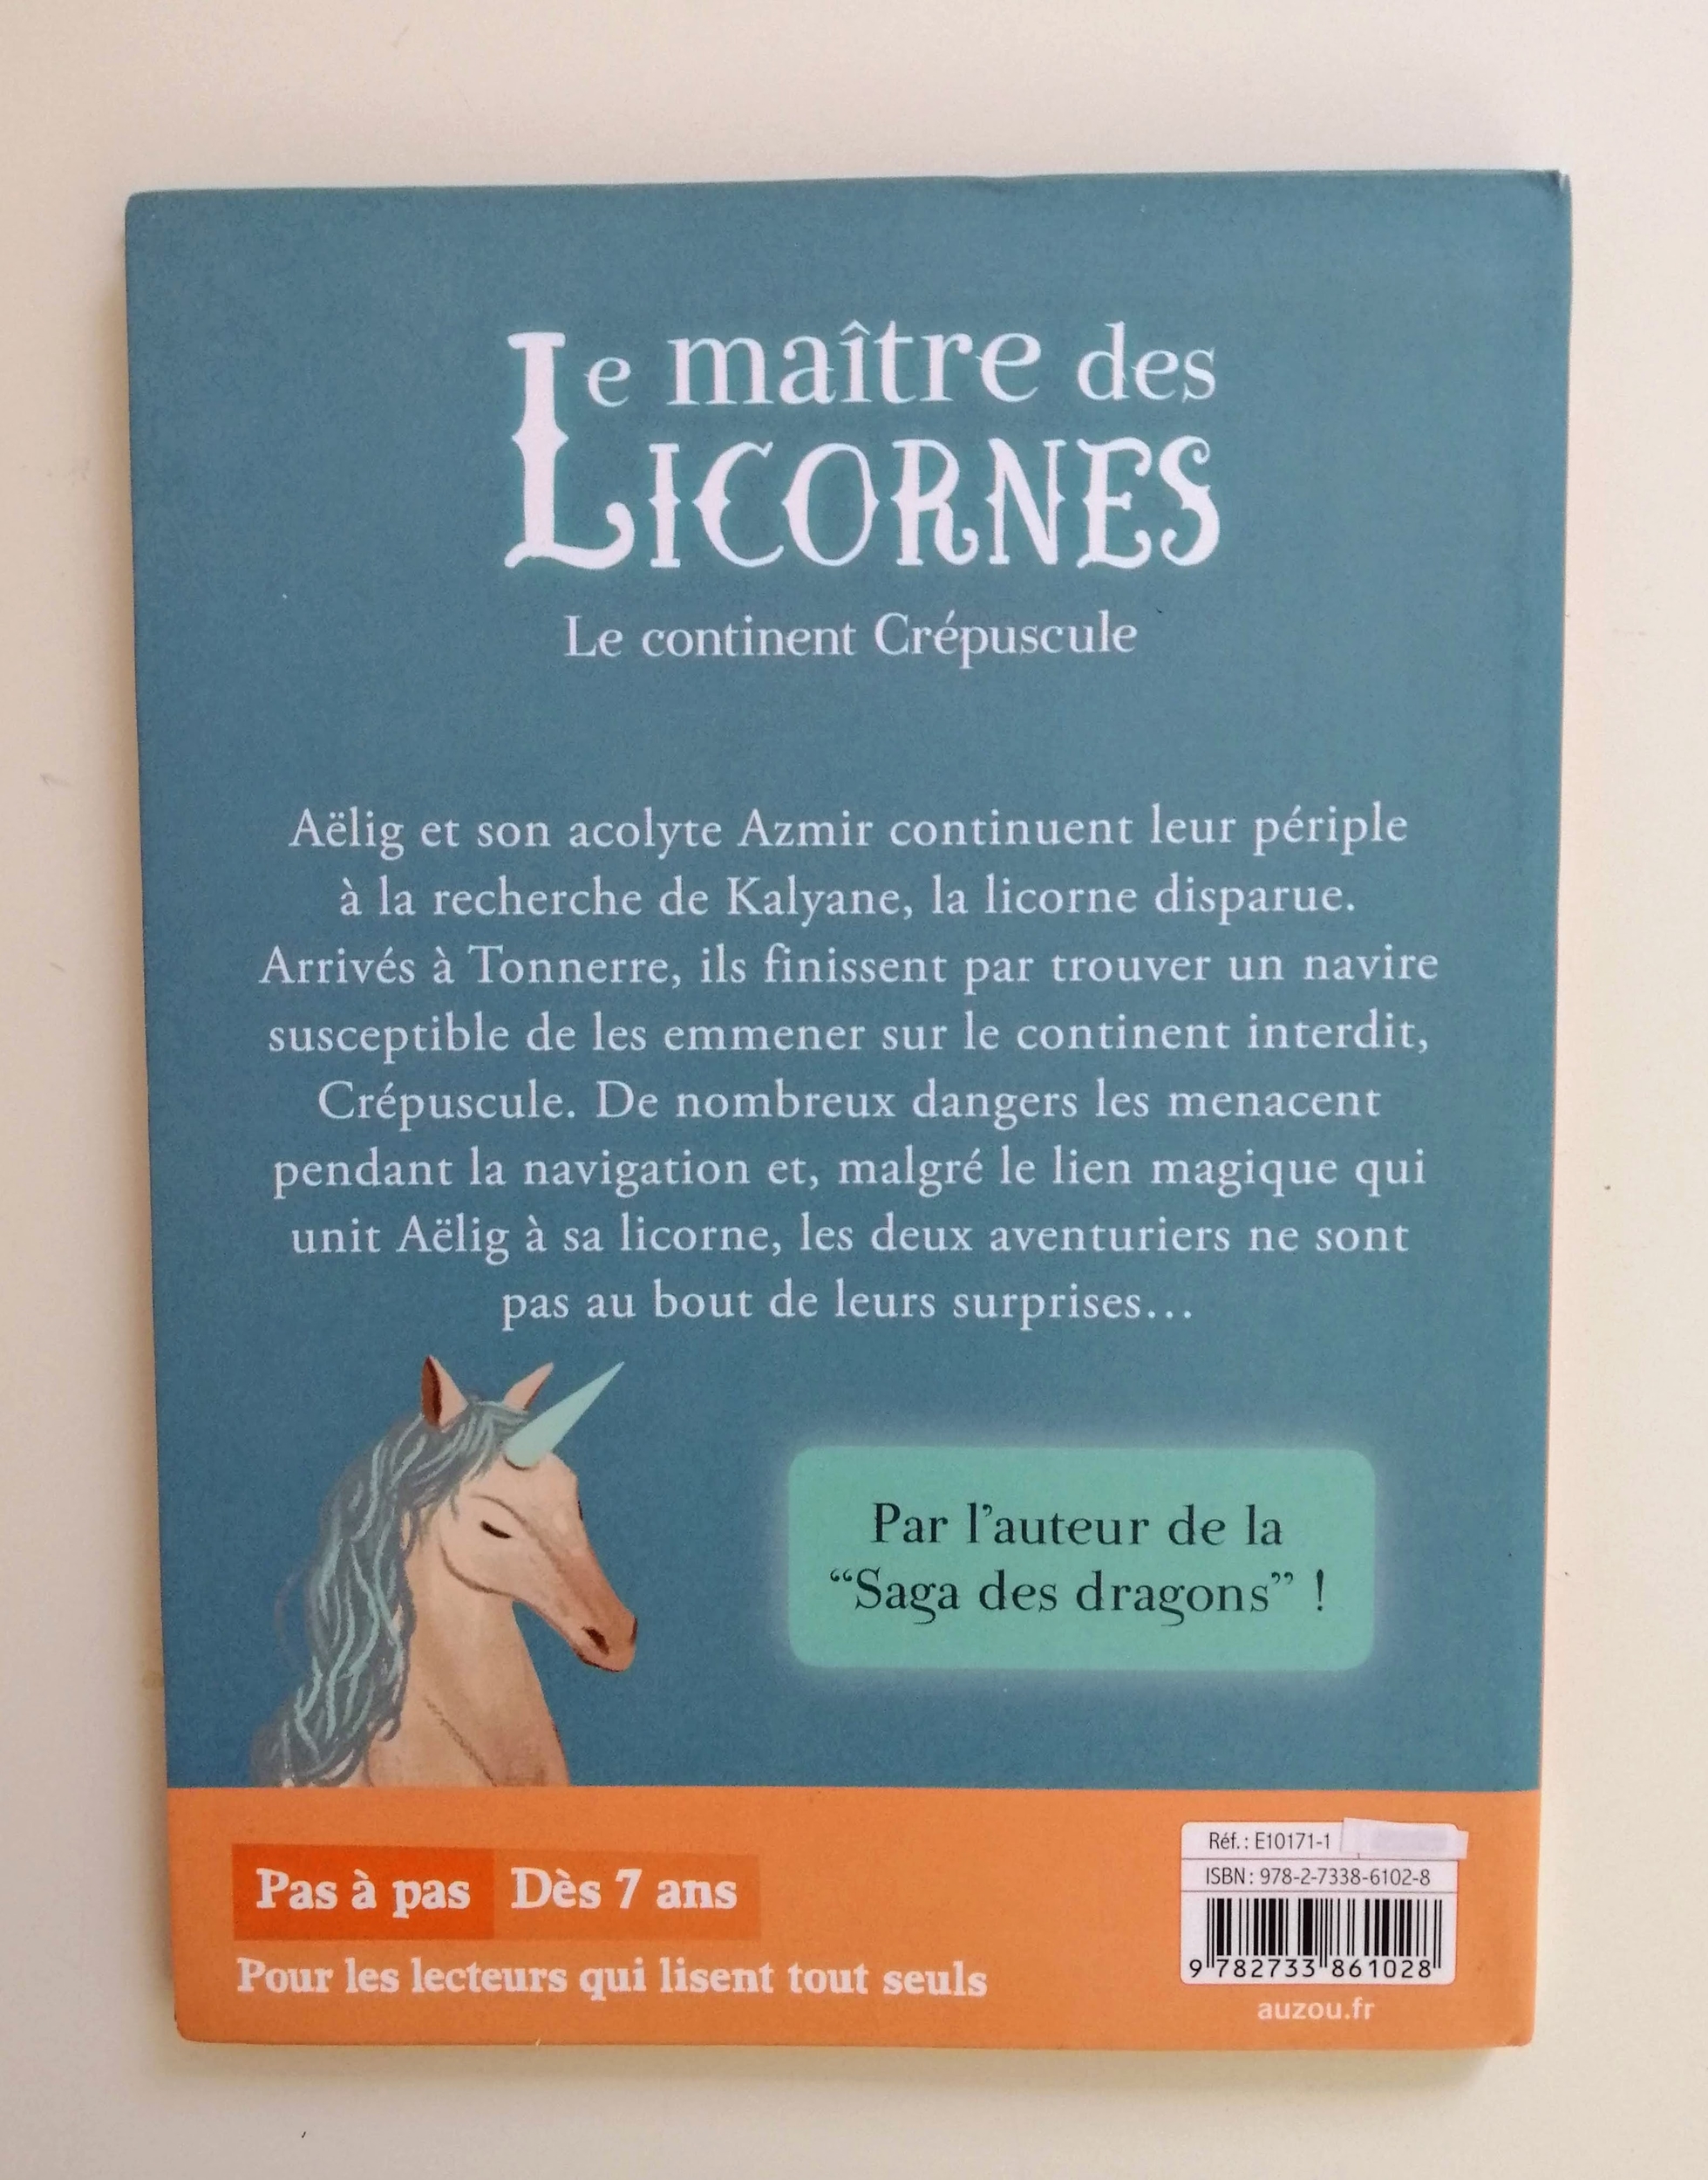 Le maître des licornes - Le continent Crépuscule - Éric Sanvoisin - Federica Frenna - Auzou - Livre poche - LBA - V